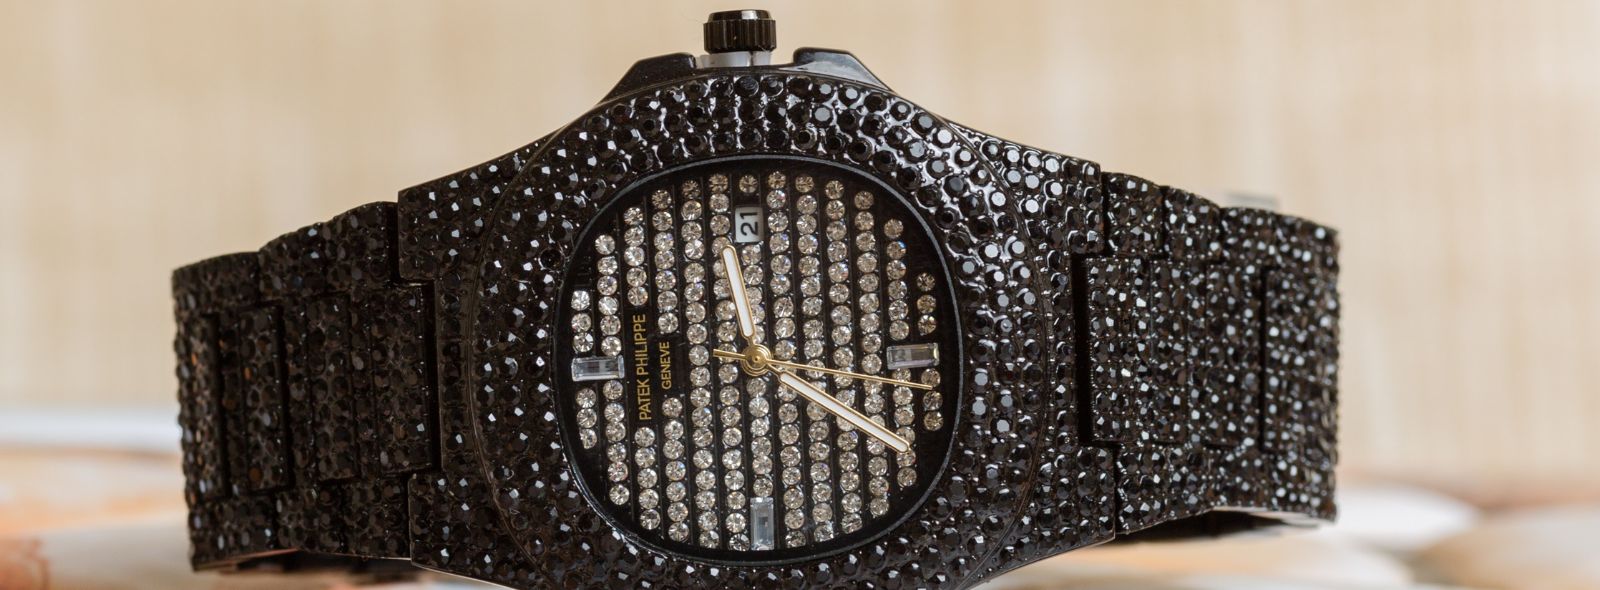 5 najdroższych zegarków świata | Zegarownia.pl Blog